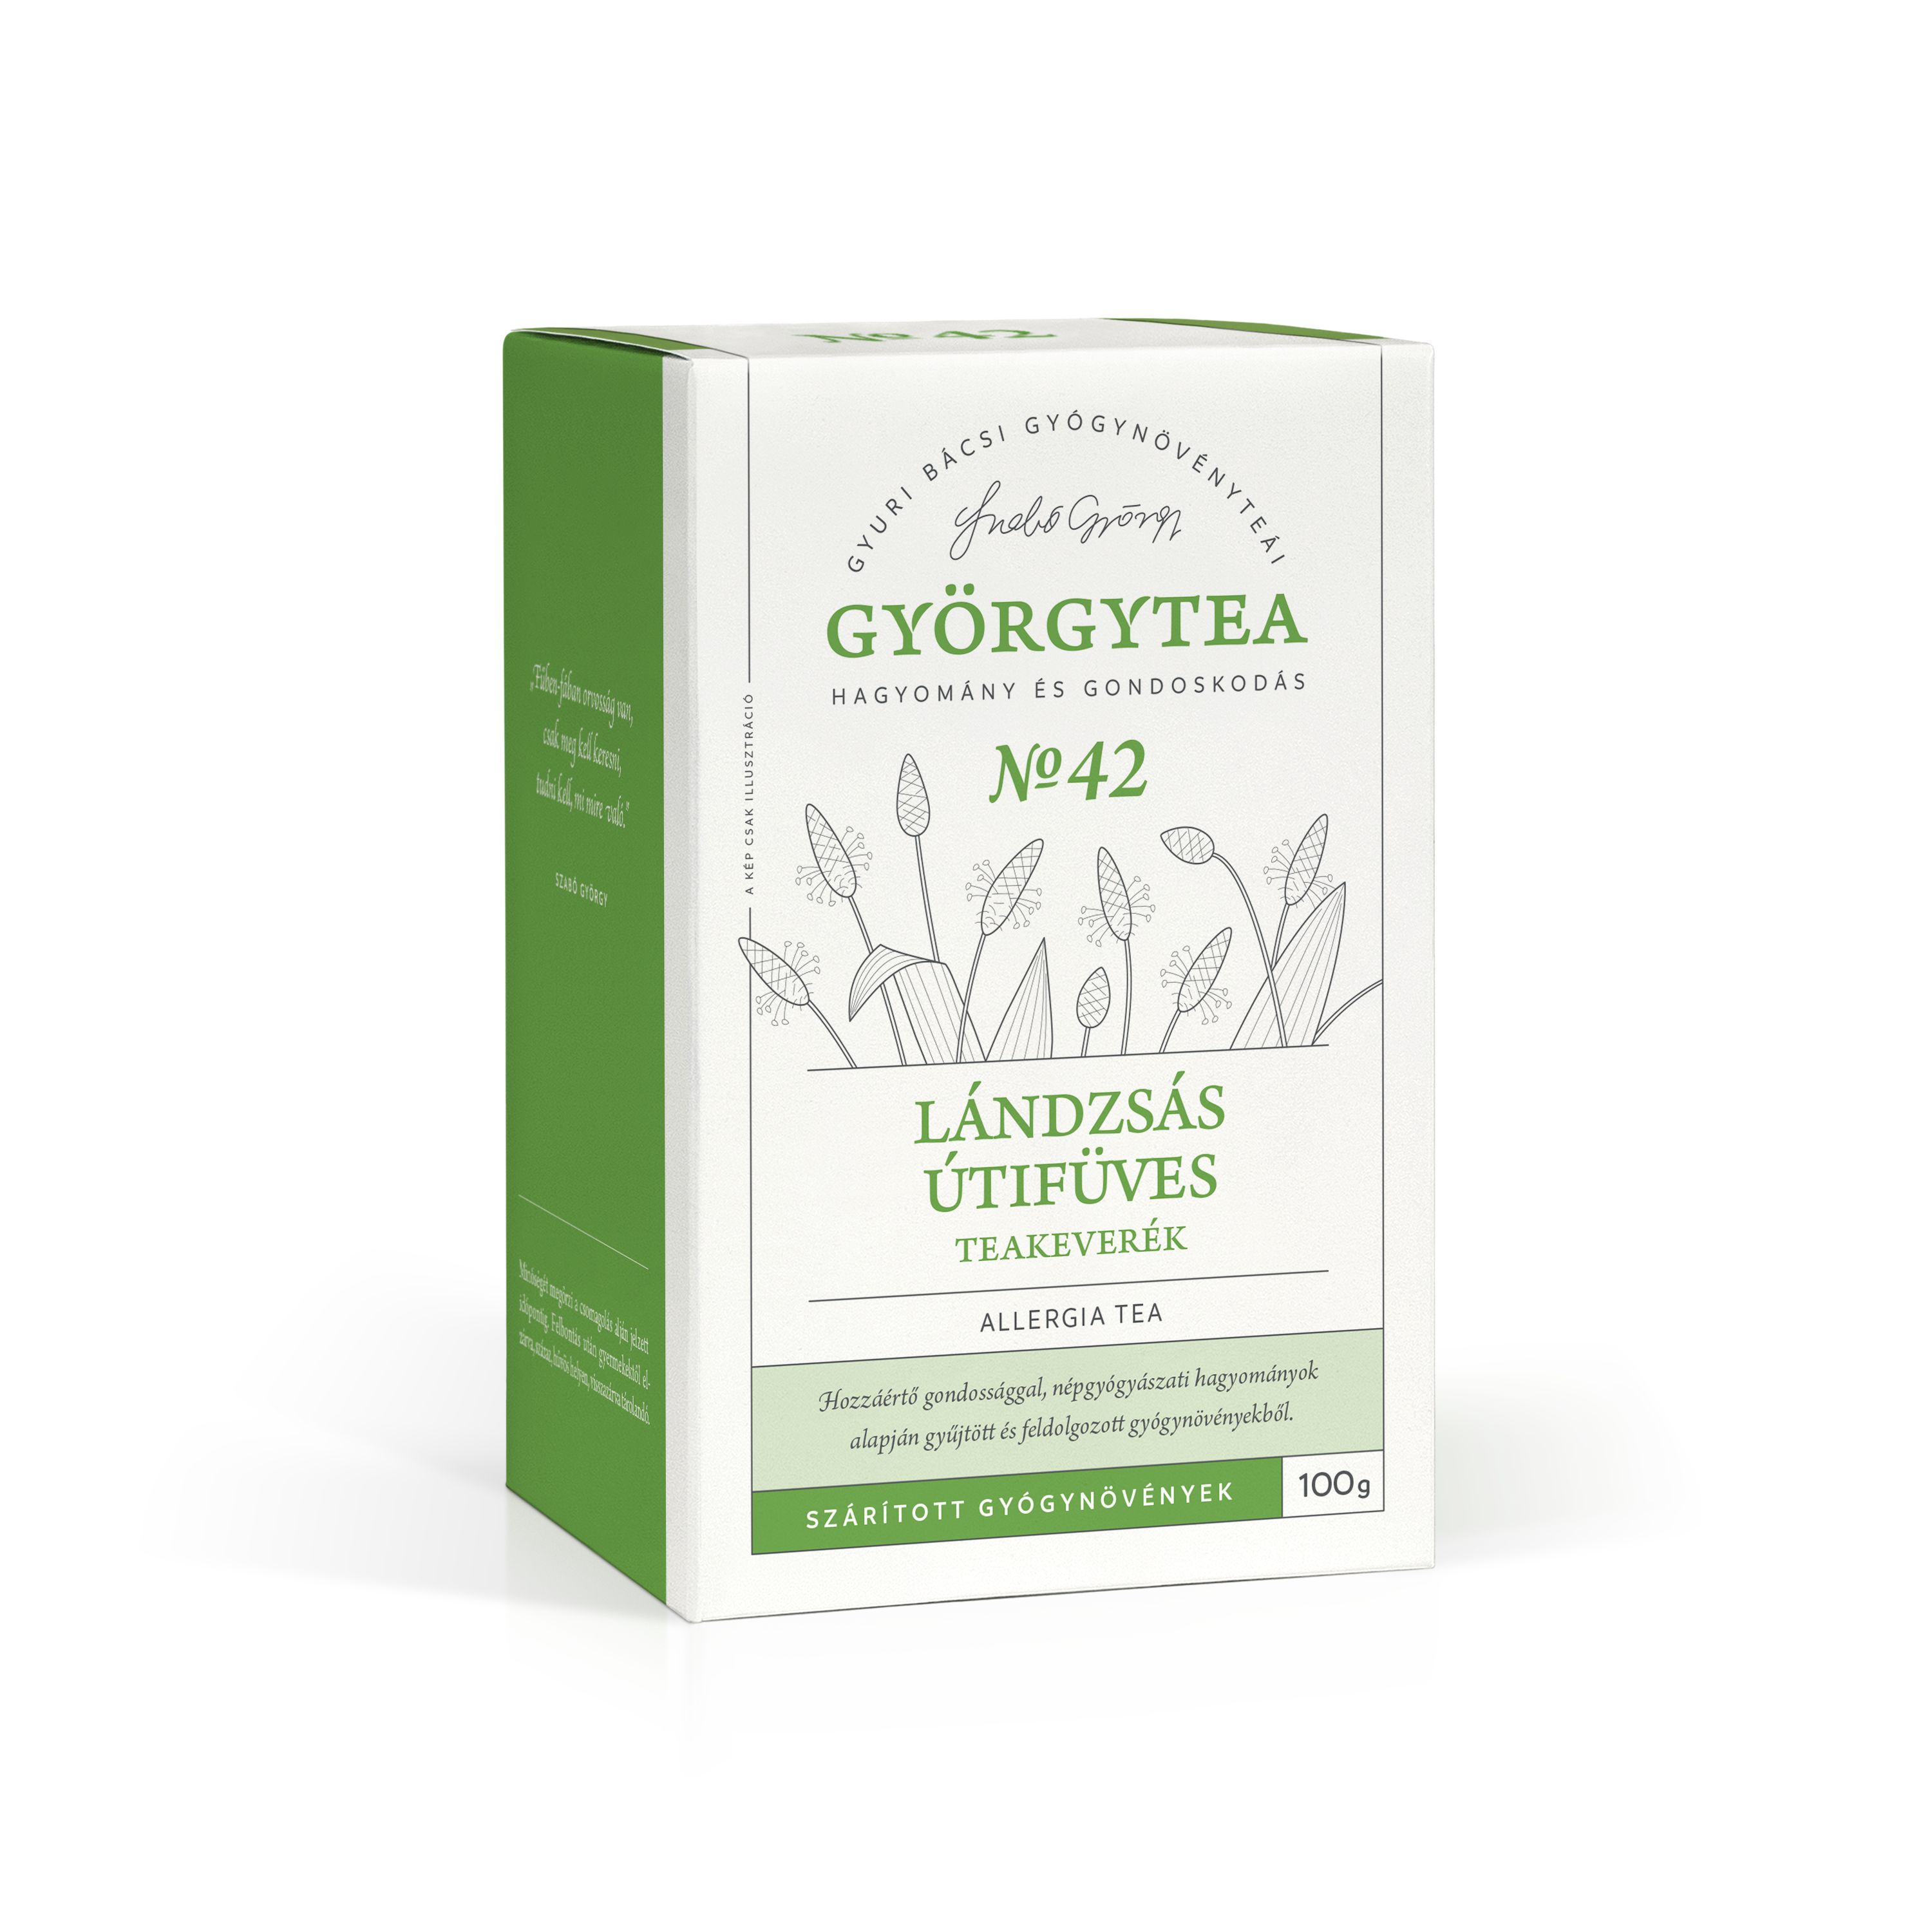 Lándzsás útifüves teakeverék (Allergia tea)